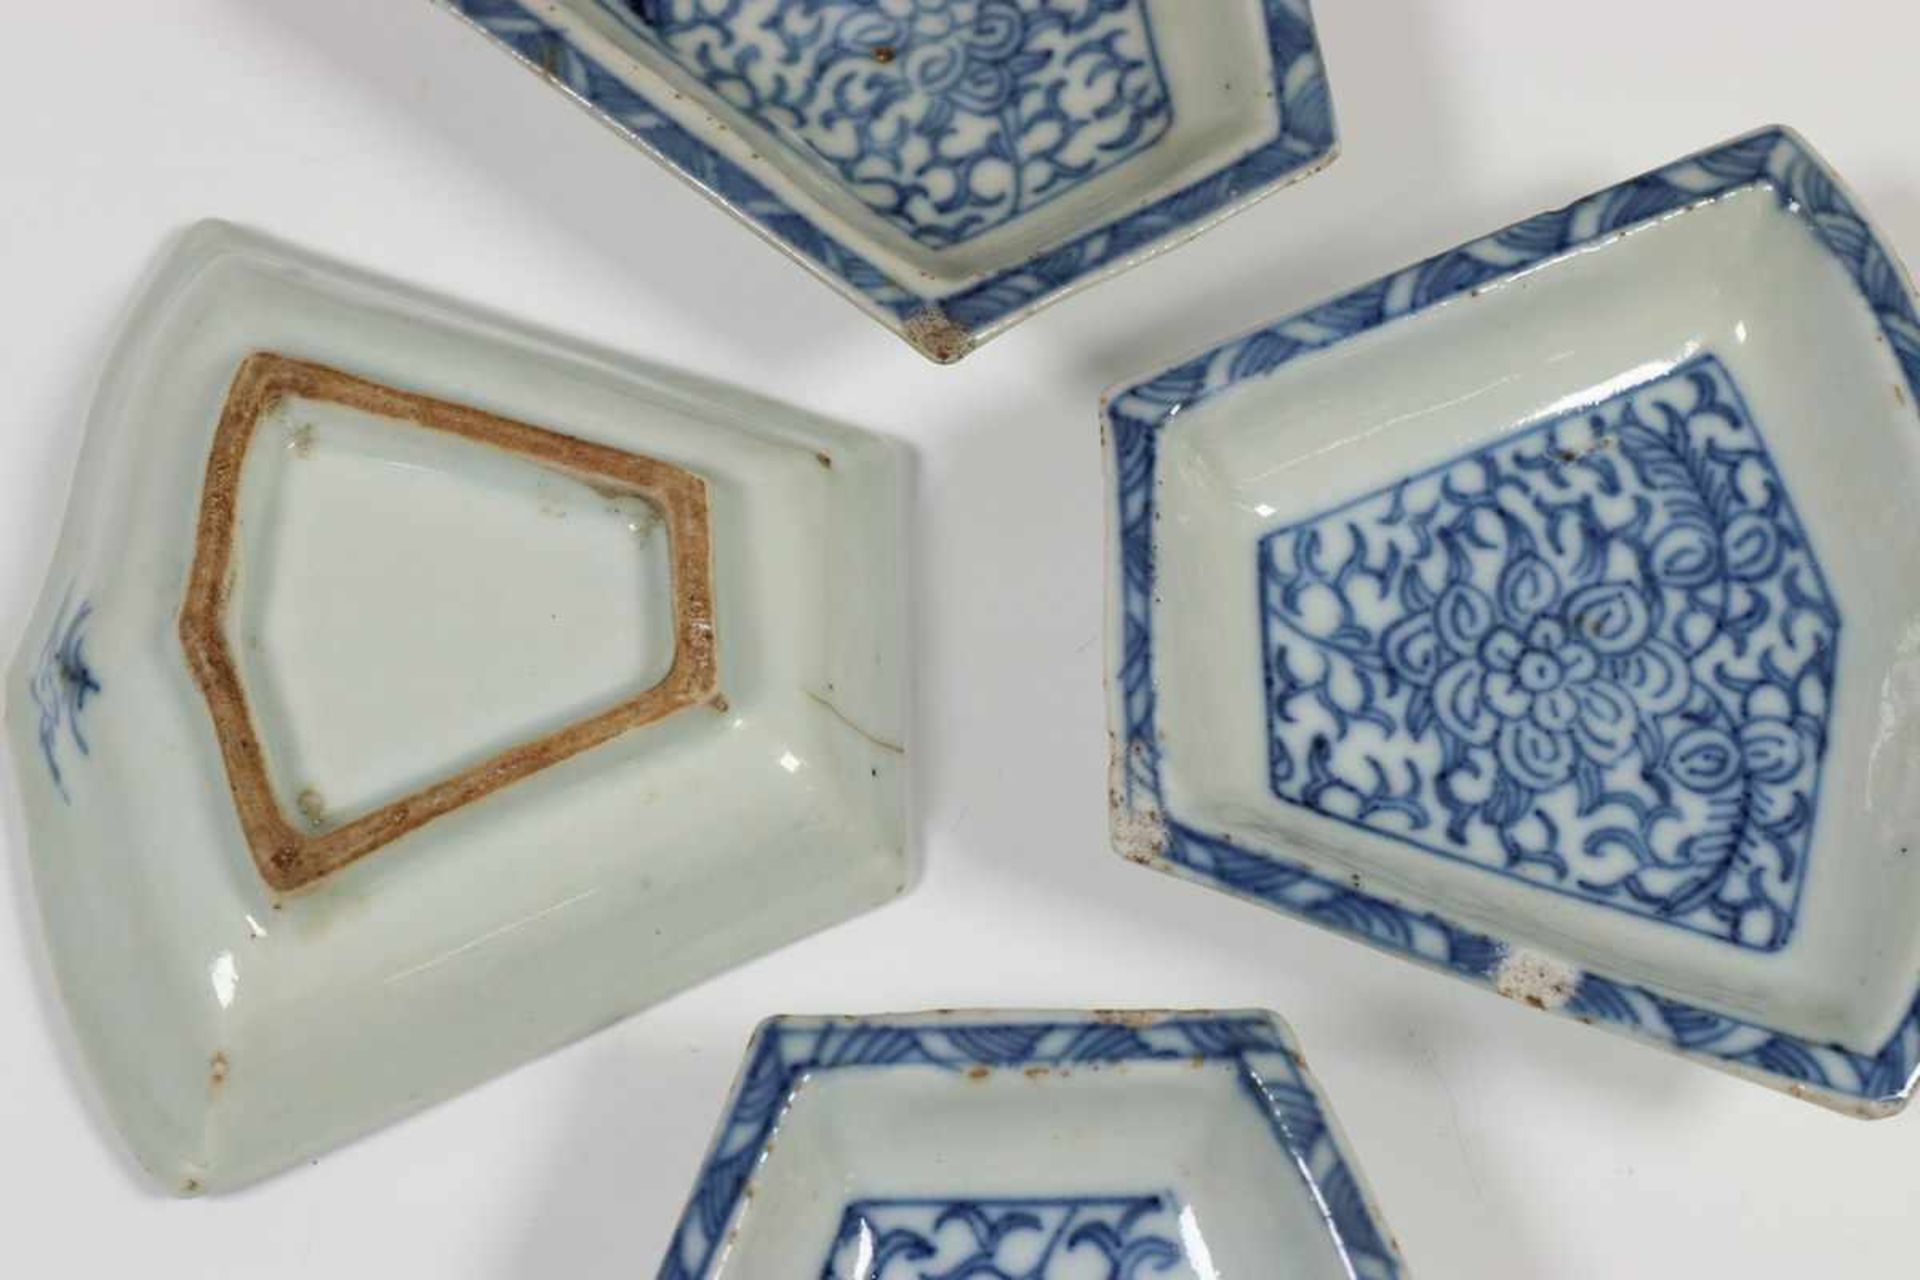 China, blauw-wit porseleinen hors d'oeuvregarnituur en drie theebussen, 19e eeuw(twee van - Bild 2 aus 3